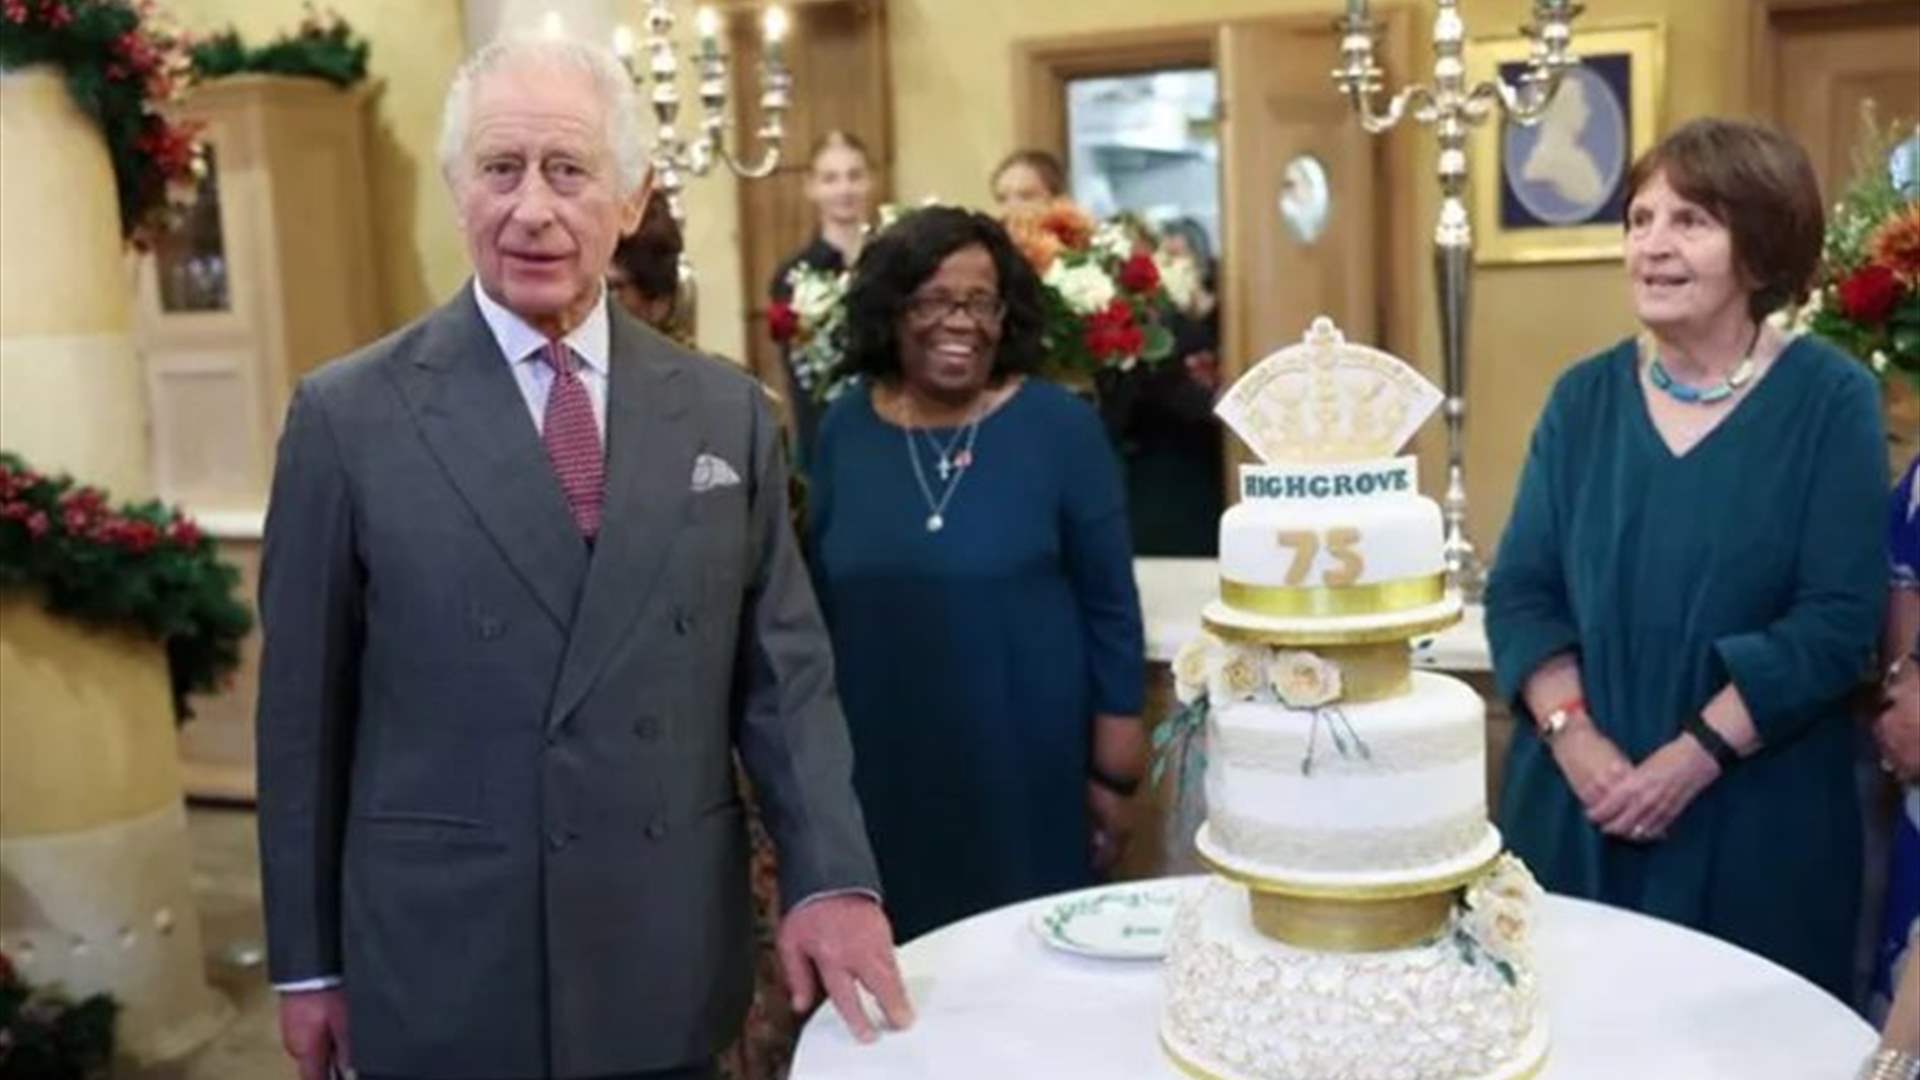 الملك تشارلز الثالث يحتفل بعيد ميلاده الخامس والسبعين